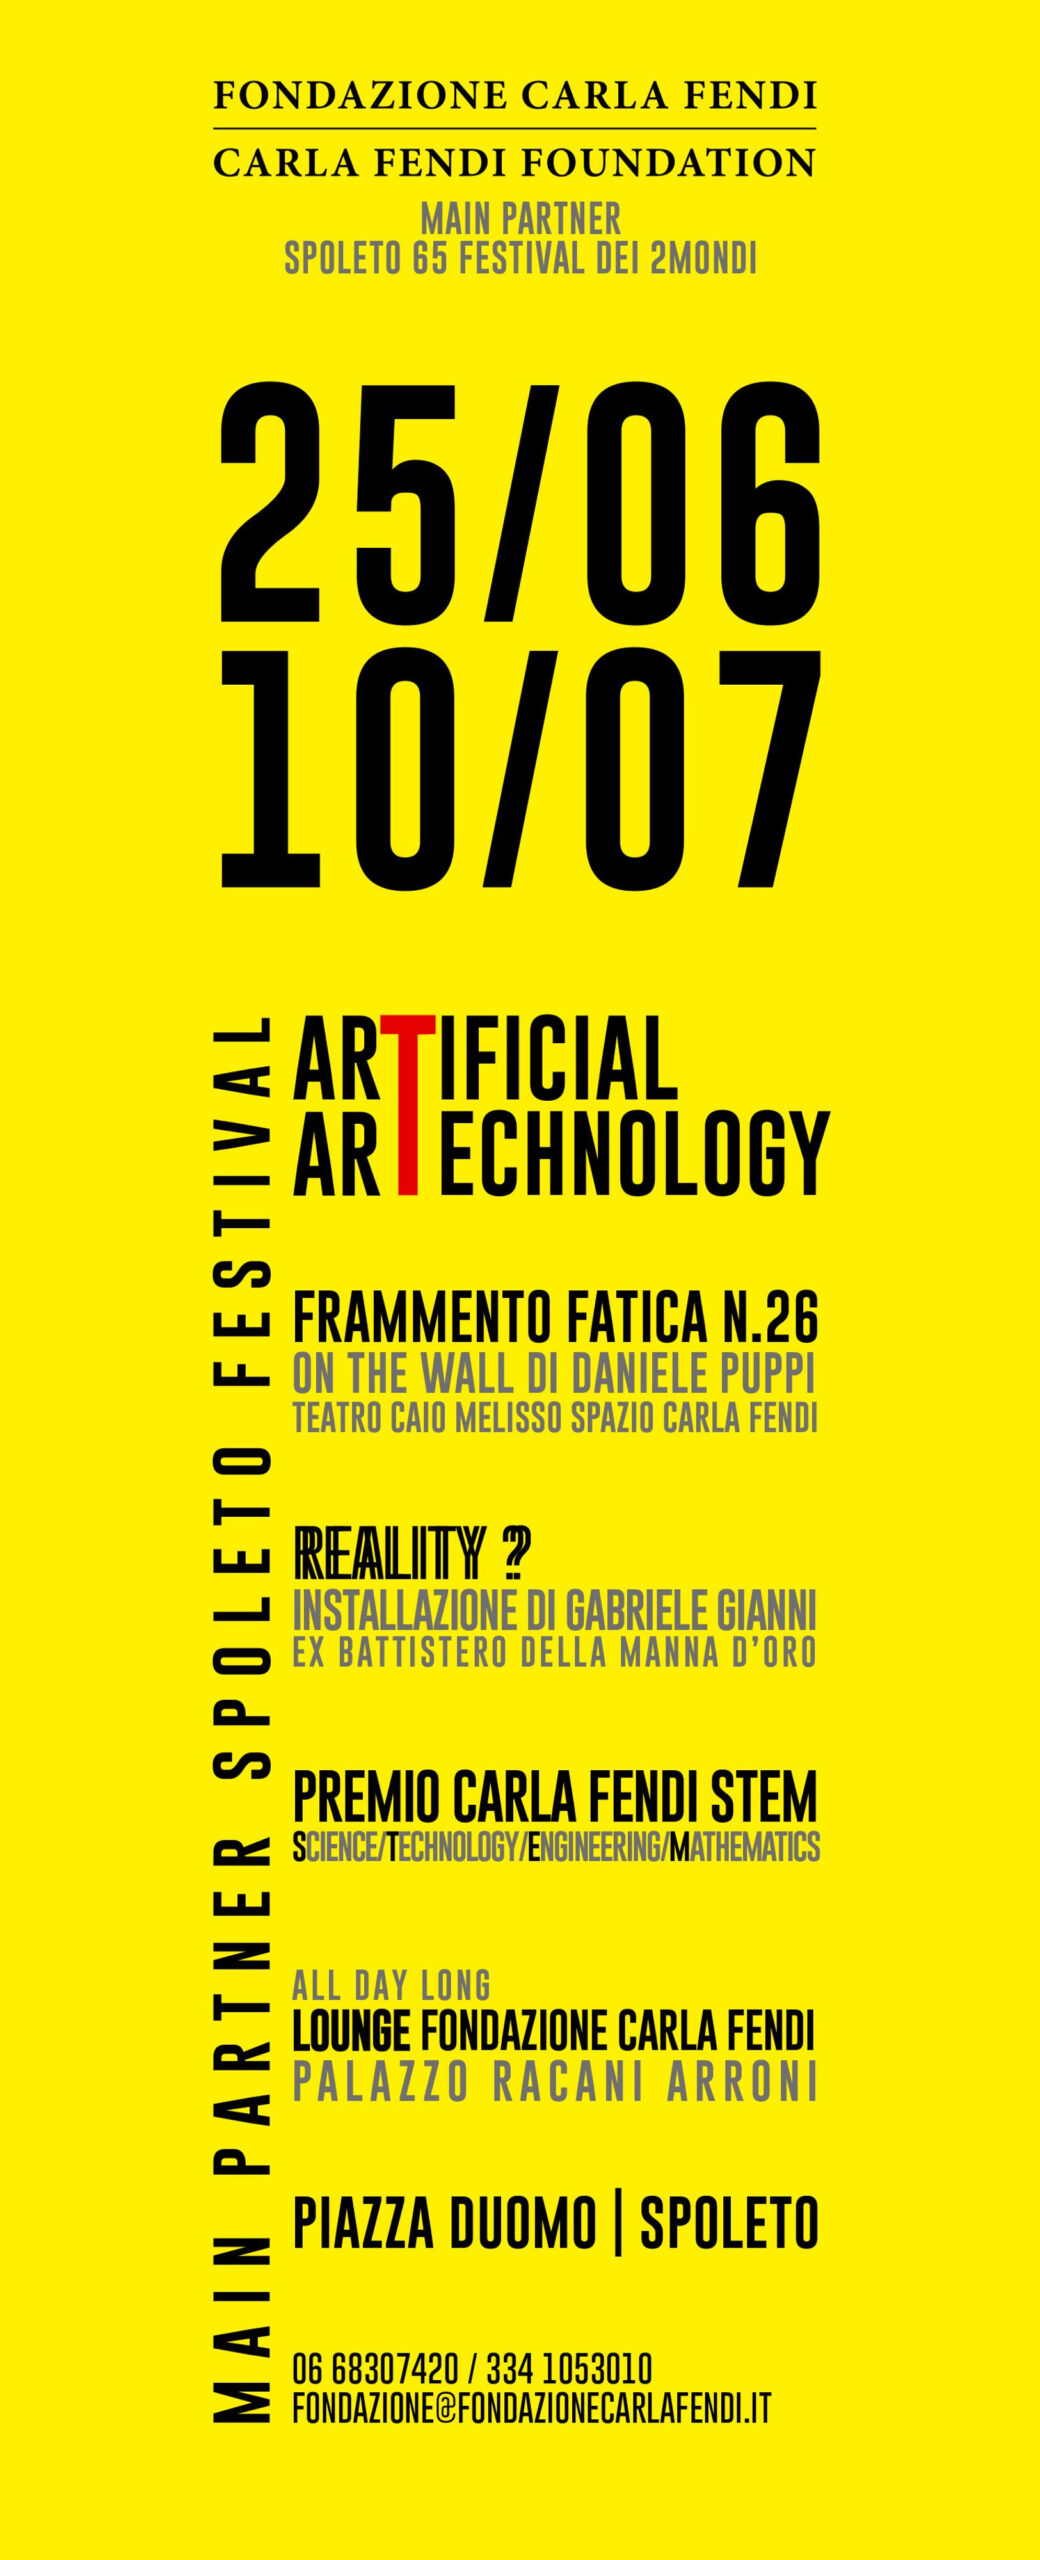 Fondazione Carla fendi – Artificial Artechnology